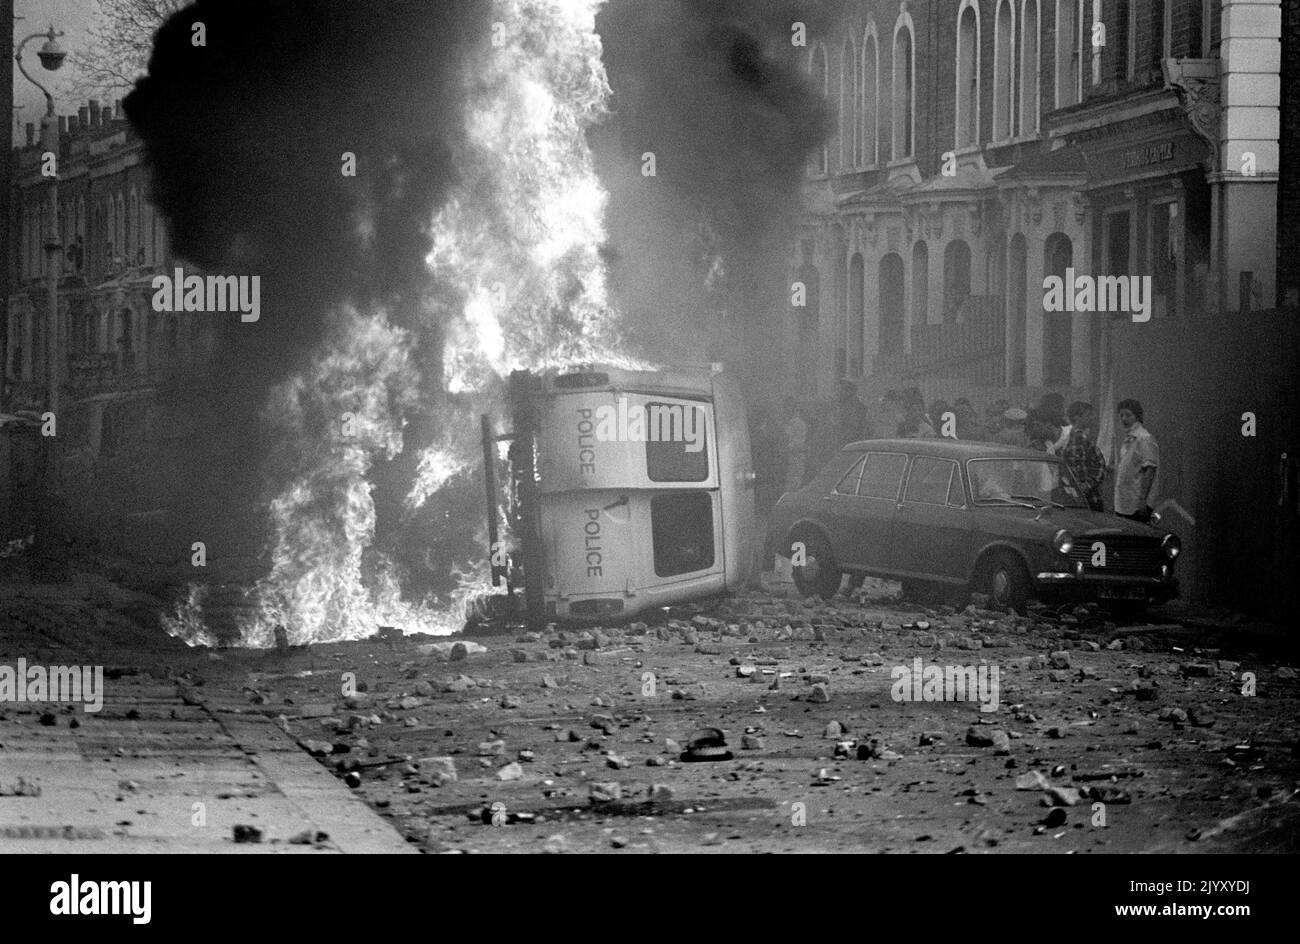 1981: Photo de dossier datée d'avril 1981 d'une fourgonnette de police incendiée lors d'une émeute à Brixton, dans le sud de Londres, où de nouveaux affrontements entre la police et les émeutiers ont fait 23 blessés. Date de publication : jeudi 8 septembre 2022. Banque D'Images